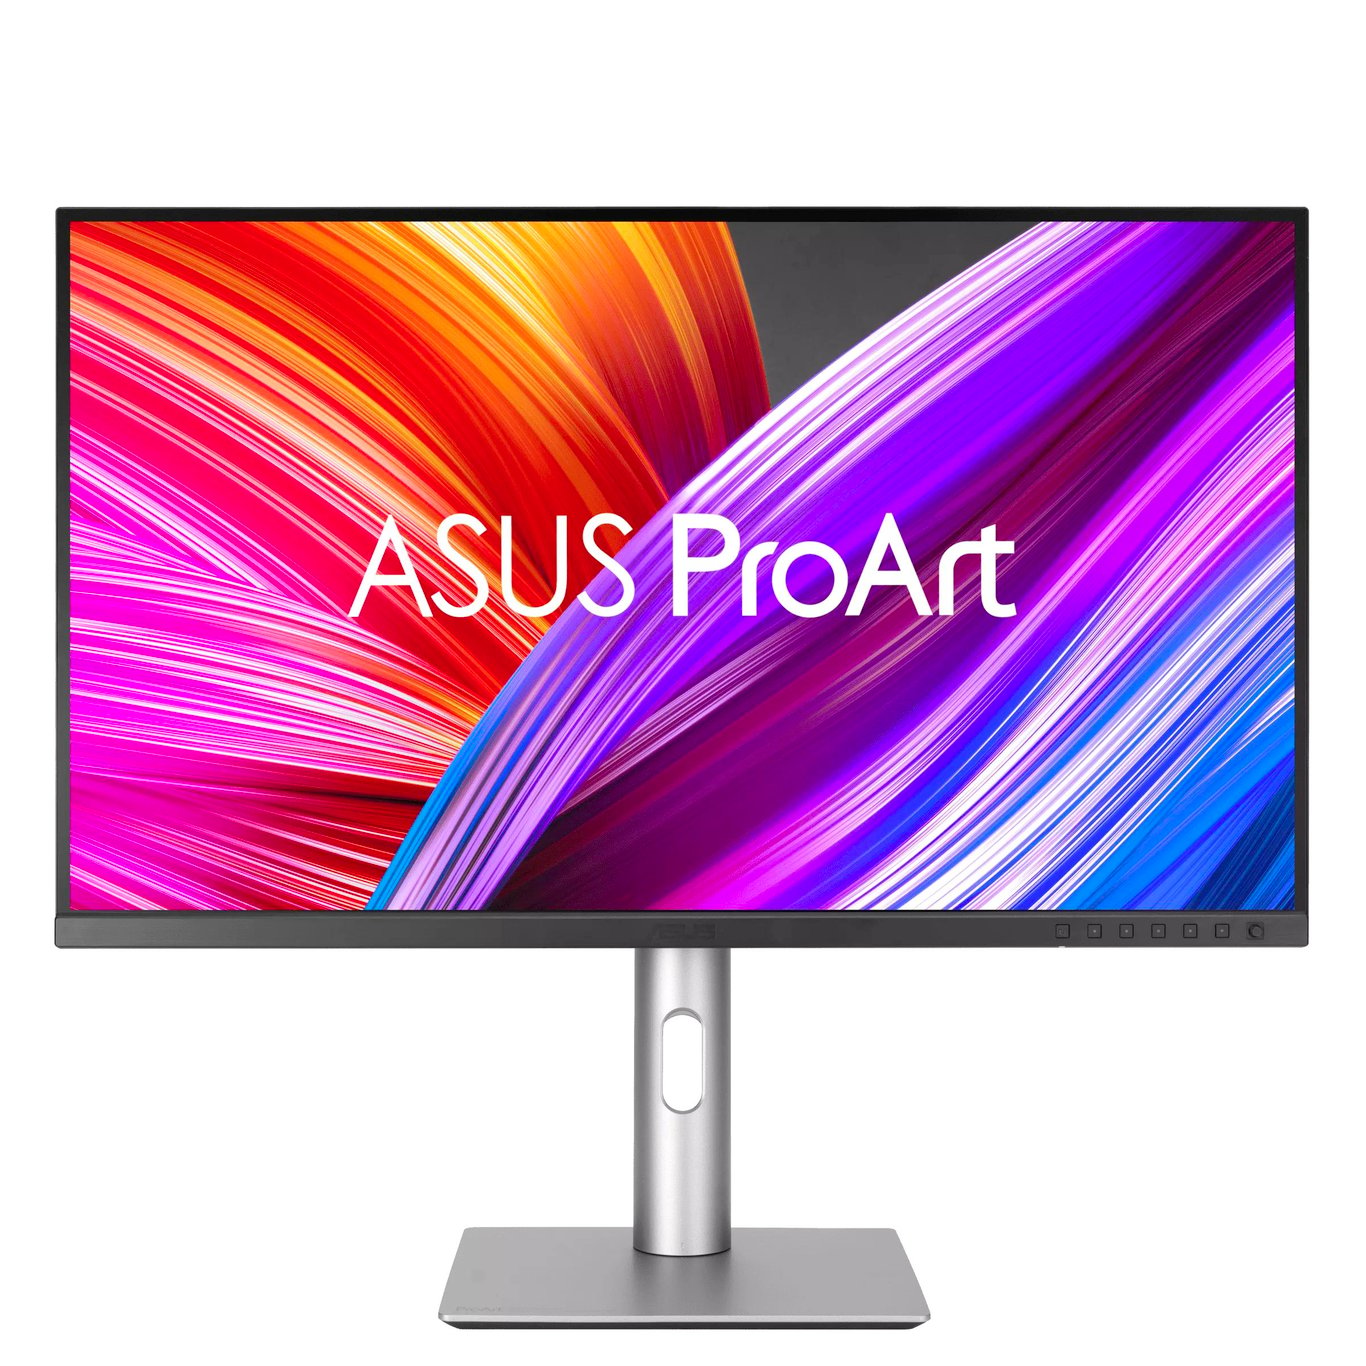 【專業創作系列】 ASUS ProArt Display PA279CRV 專業顯示器 (27 吋 UHD 60Hz IPS HDR Adaptive-Sync) - 3840 x 2160